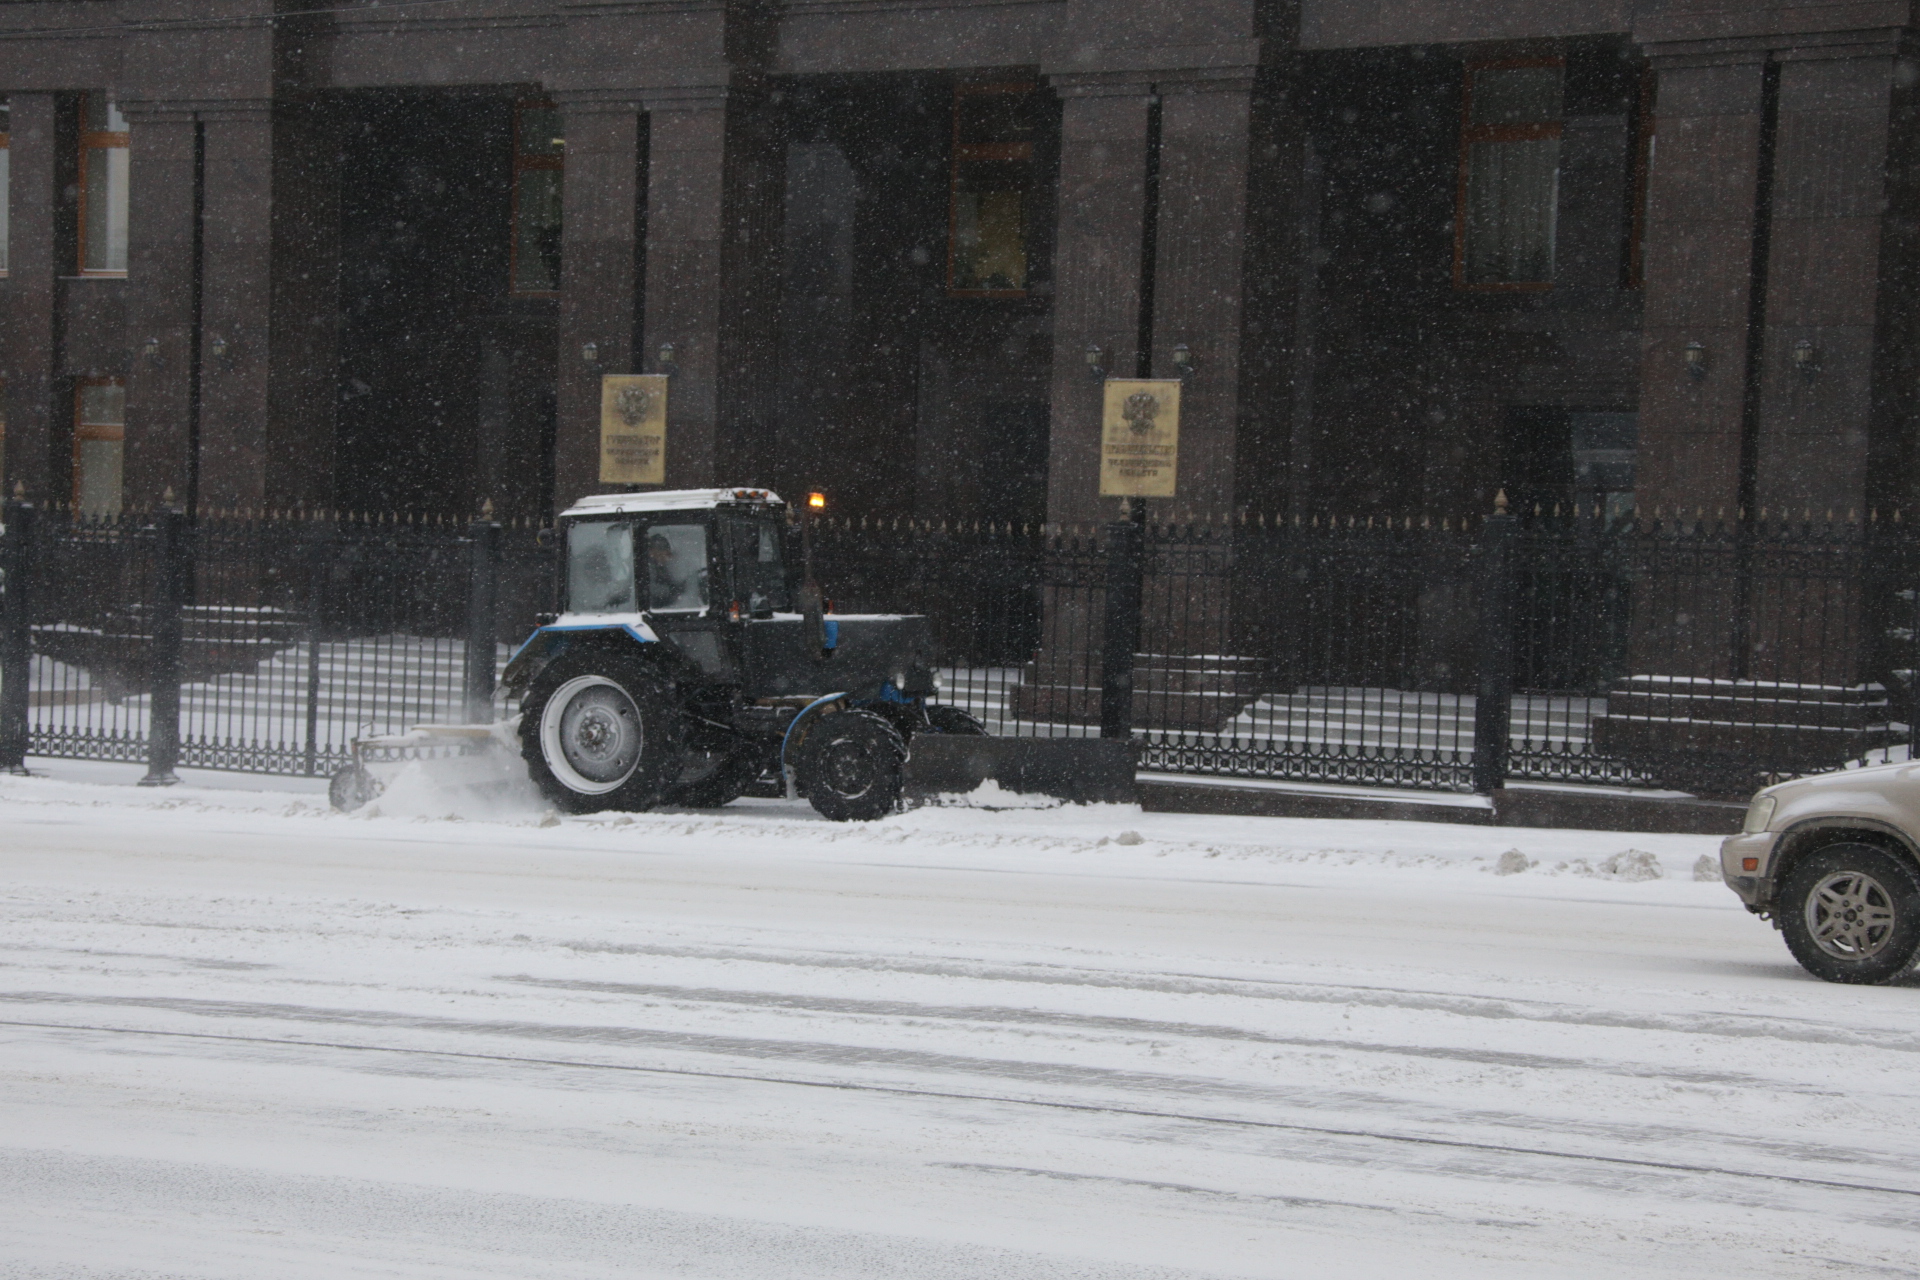 Пробки 9 баллов и уборка снега на дорогах: Челябинск накрыла сильная метель